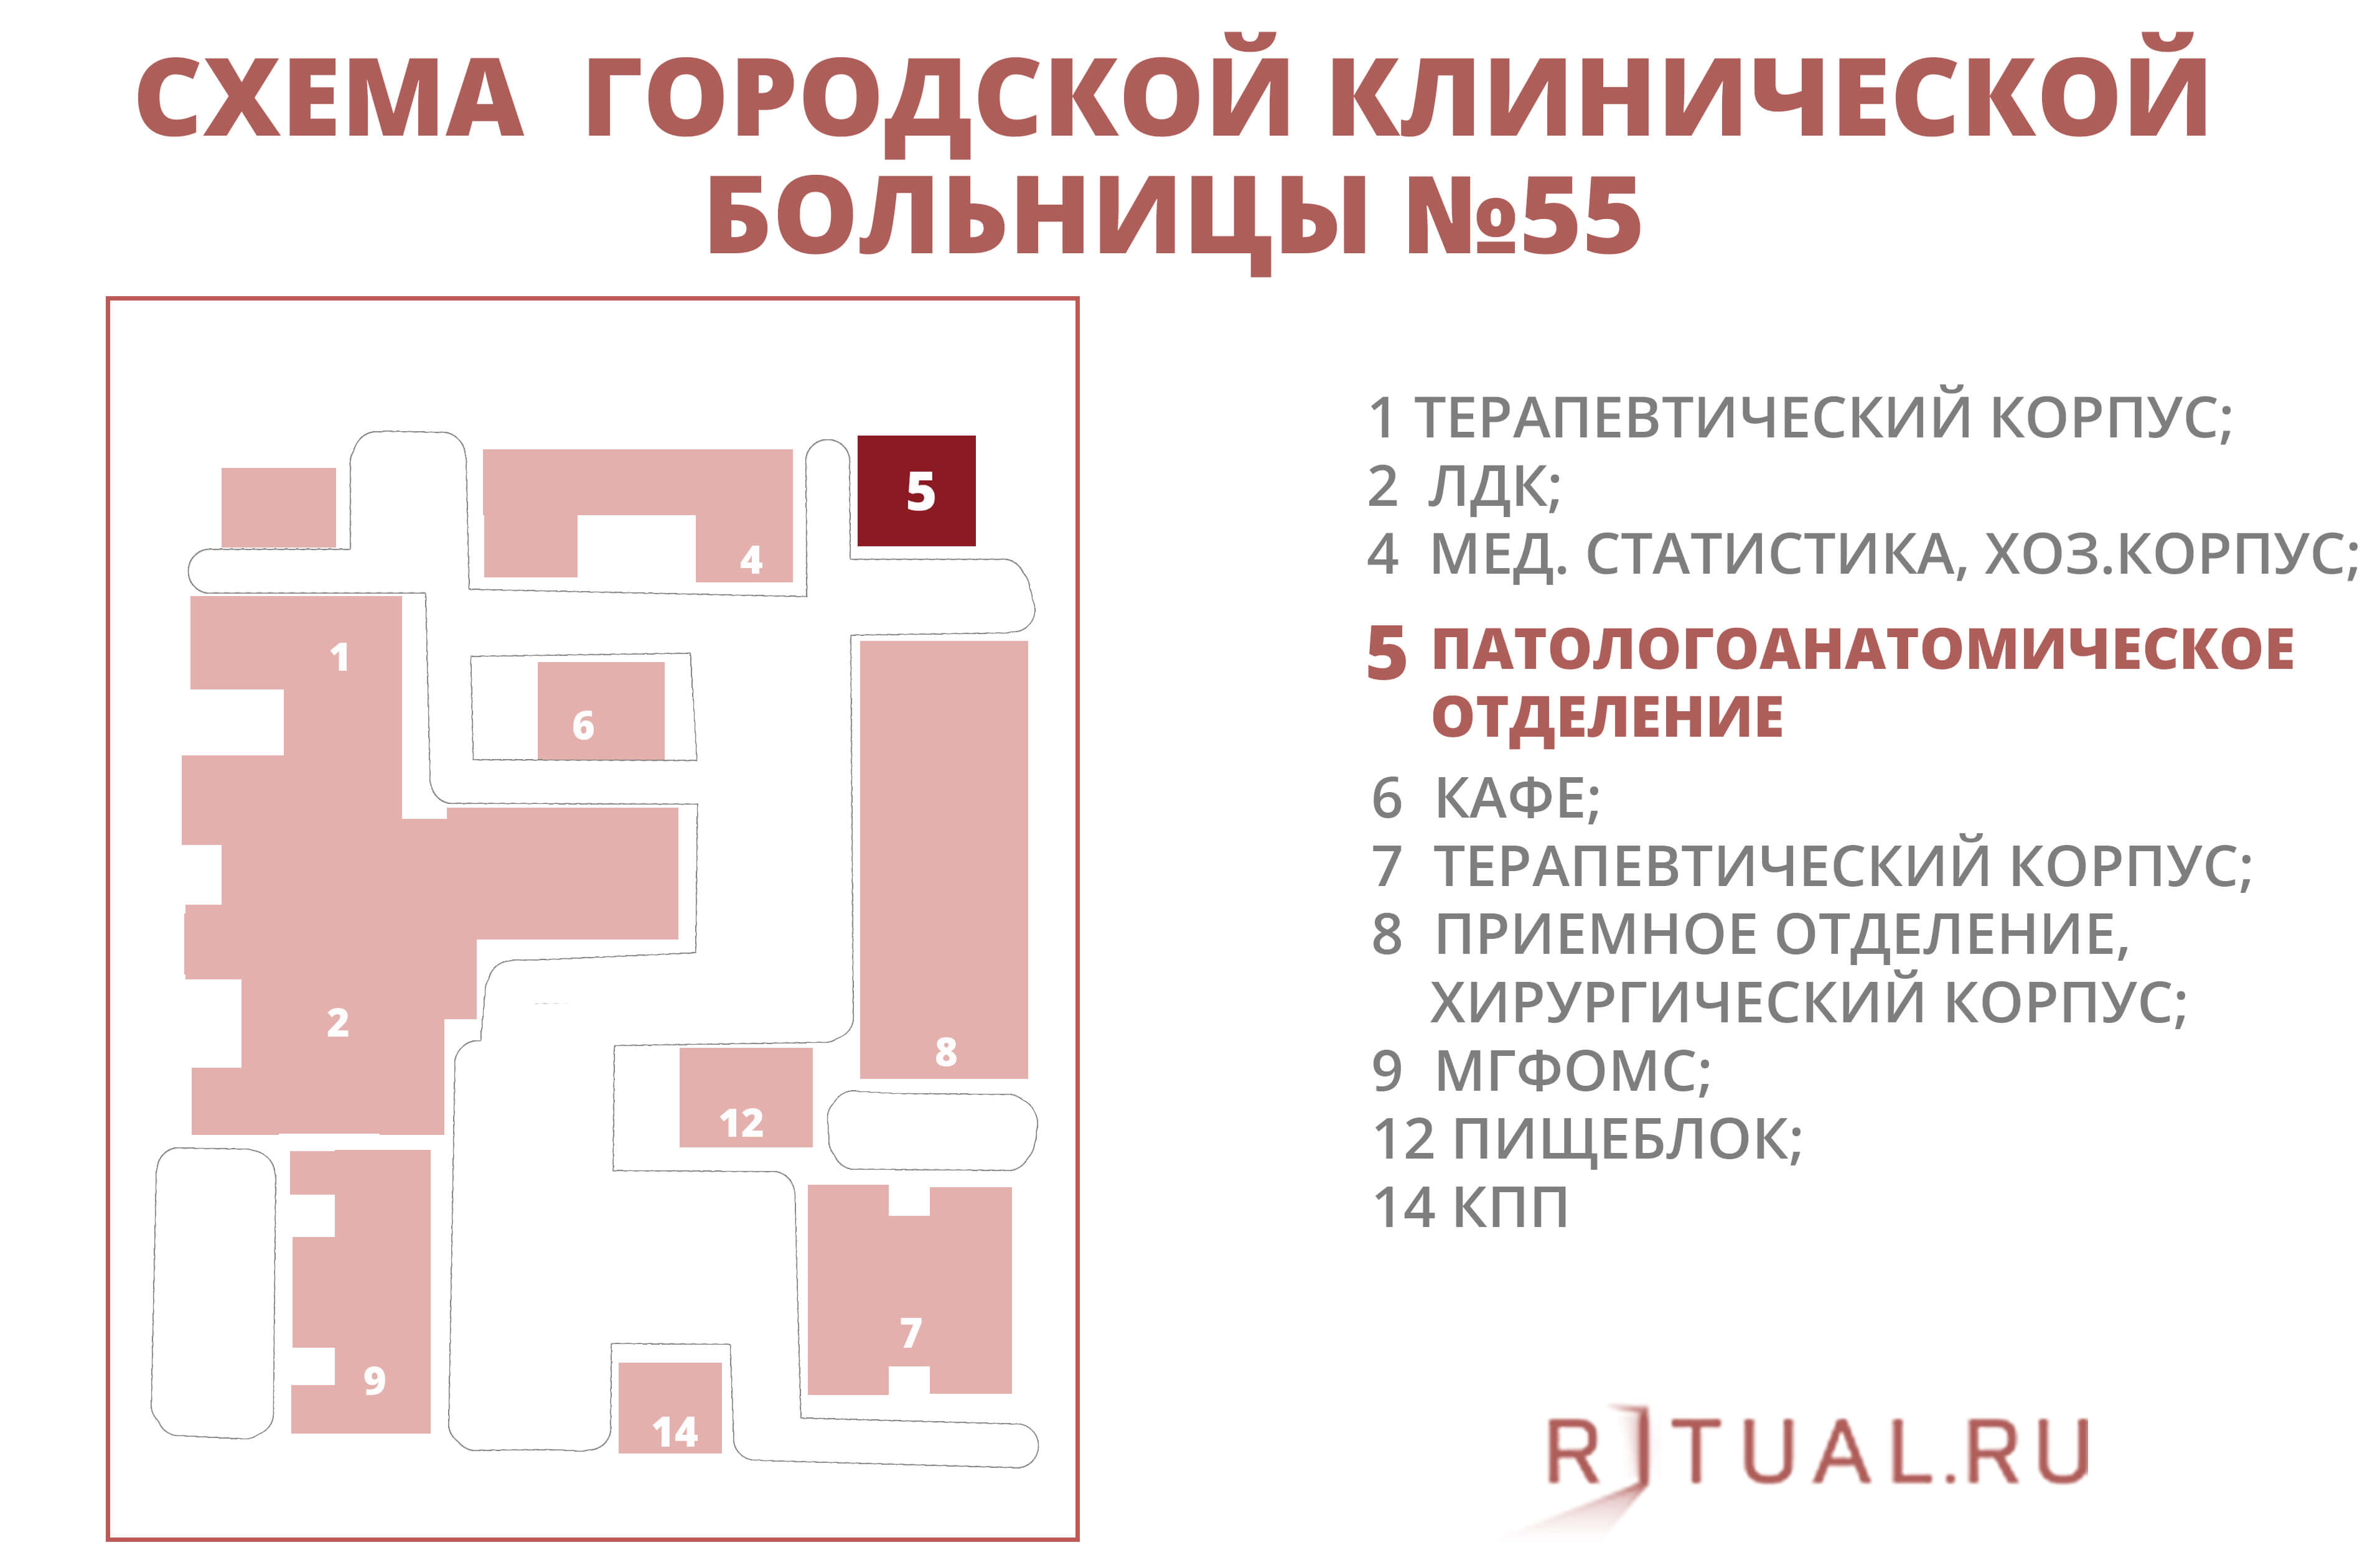 2 отделение 15 больницы. Больница 52 Москва план больницы. 67 Городская больница схема корпусов. Схема городской клинической больницы 67 Москва. Боткинская больница корпуса.